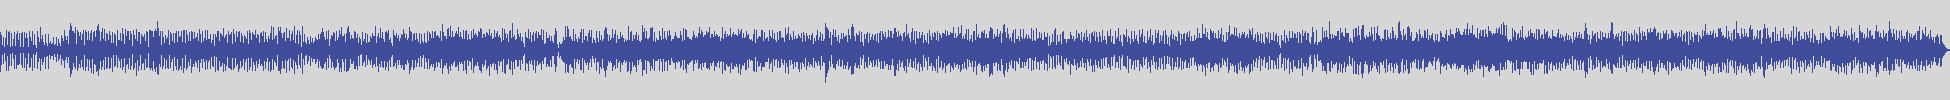 digiphonic_records [DPR013] Little Tony - La Fine Di Agosto [Original Mix] audio wave form